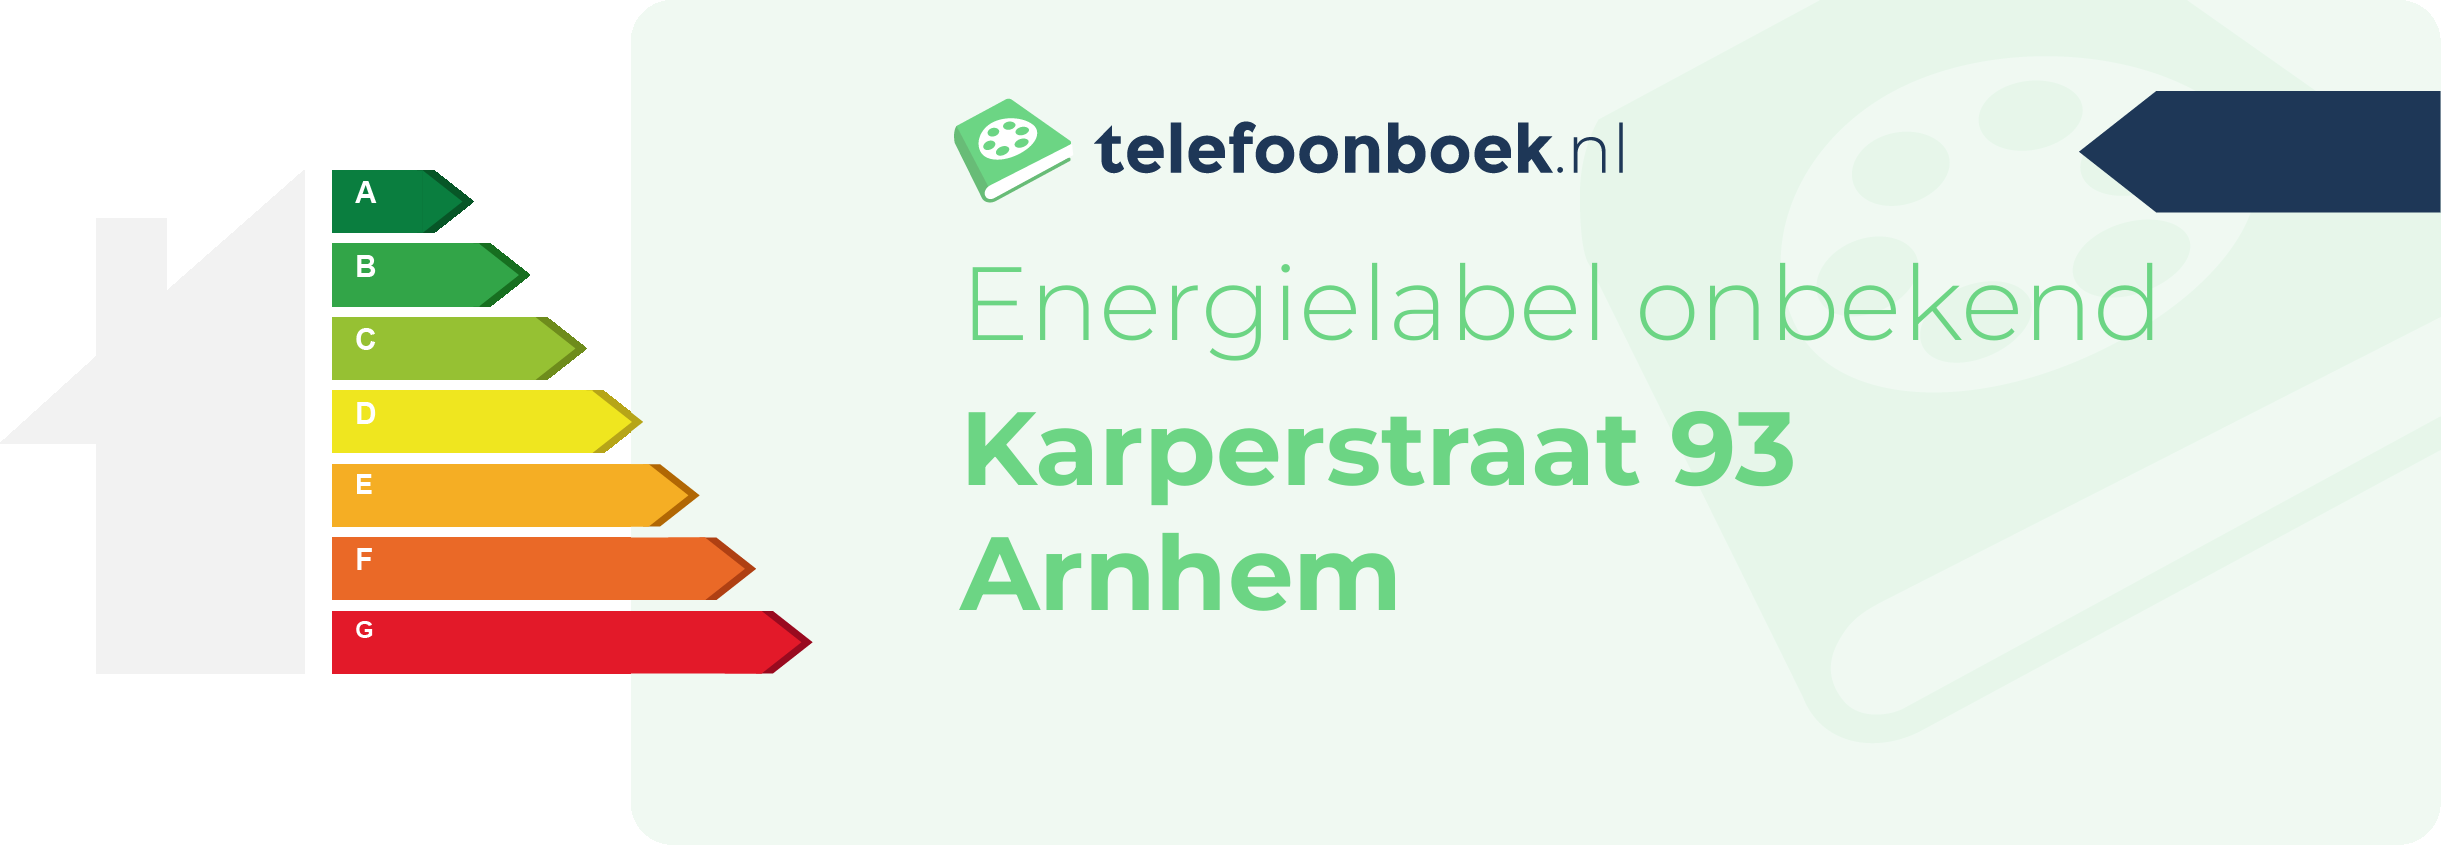 Energielabel Karperstraat 93 Arnhem